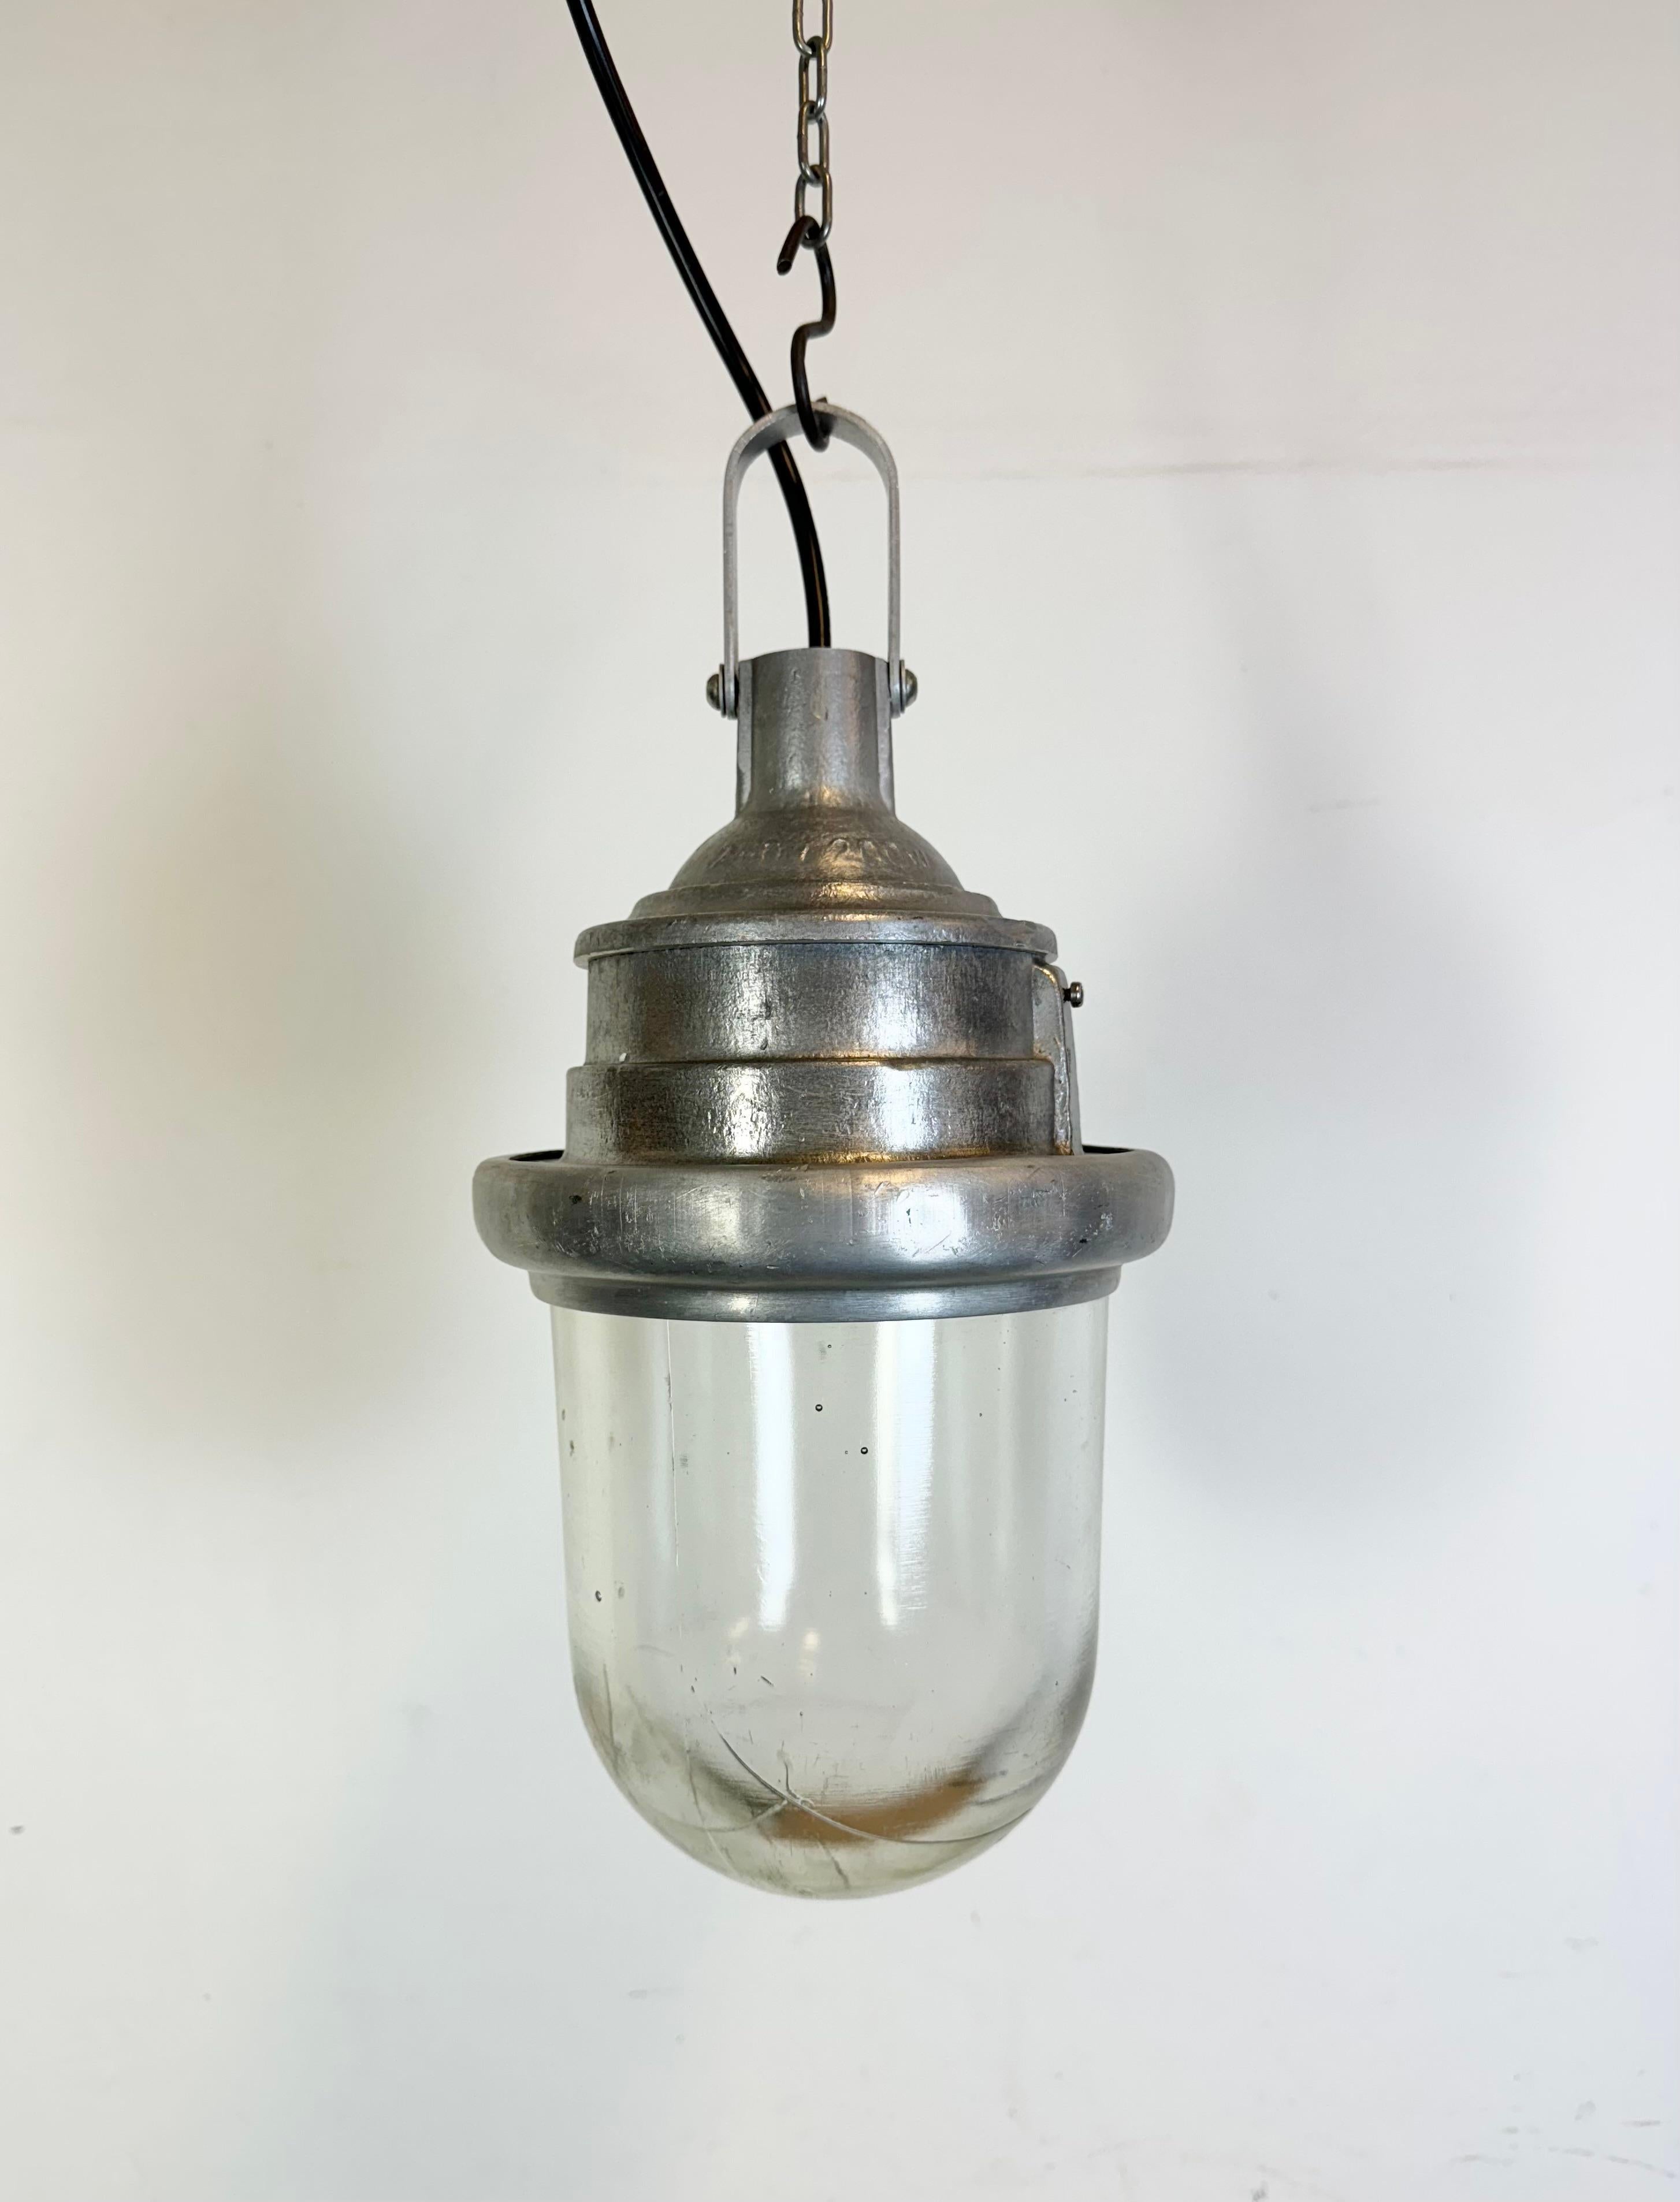 - Vintage Industrial Fabrik Licht aus den 1960er Jahren 
- Hergestellt in der Ukraine in der ehemaligen Sowjetunion
- Gehäuse aus Aluminiumguss
- Klarglas
- Sockel erfordert Standard E27/ E26 Glühbirnen 
- Neues Kabel 
- Durchmesser der Lampe: 19